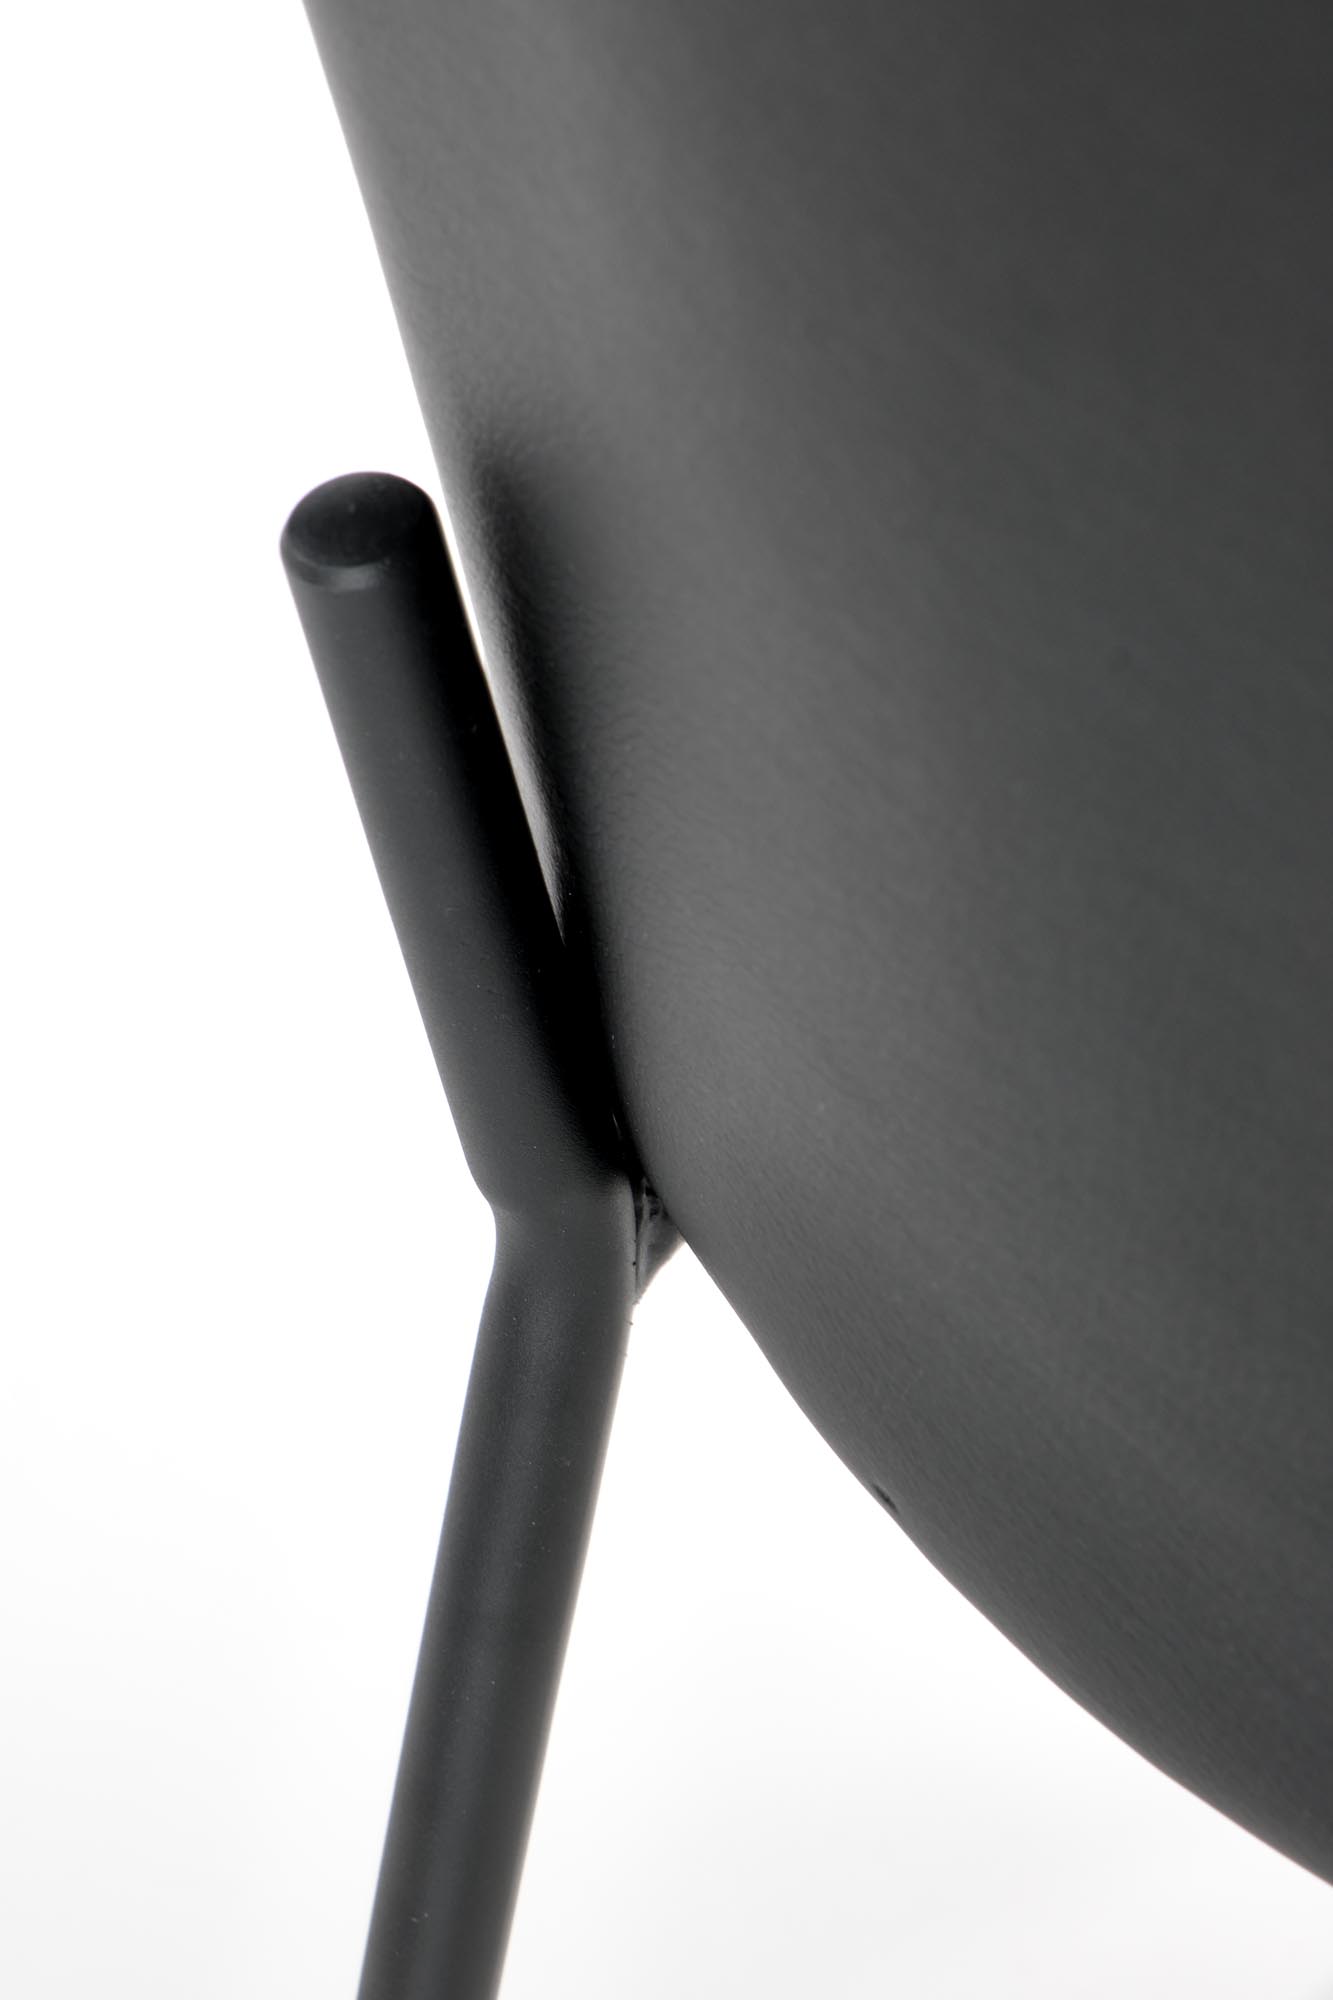 K471 jedálenská stolička šedá/čierna